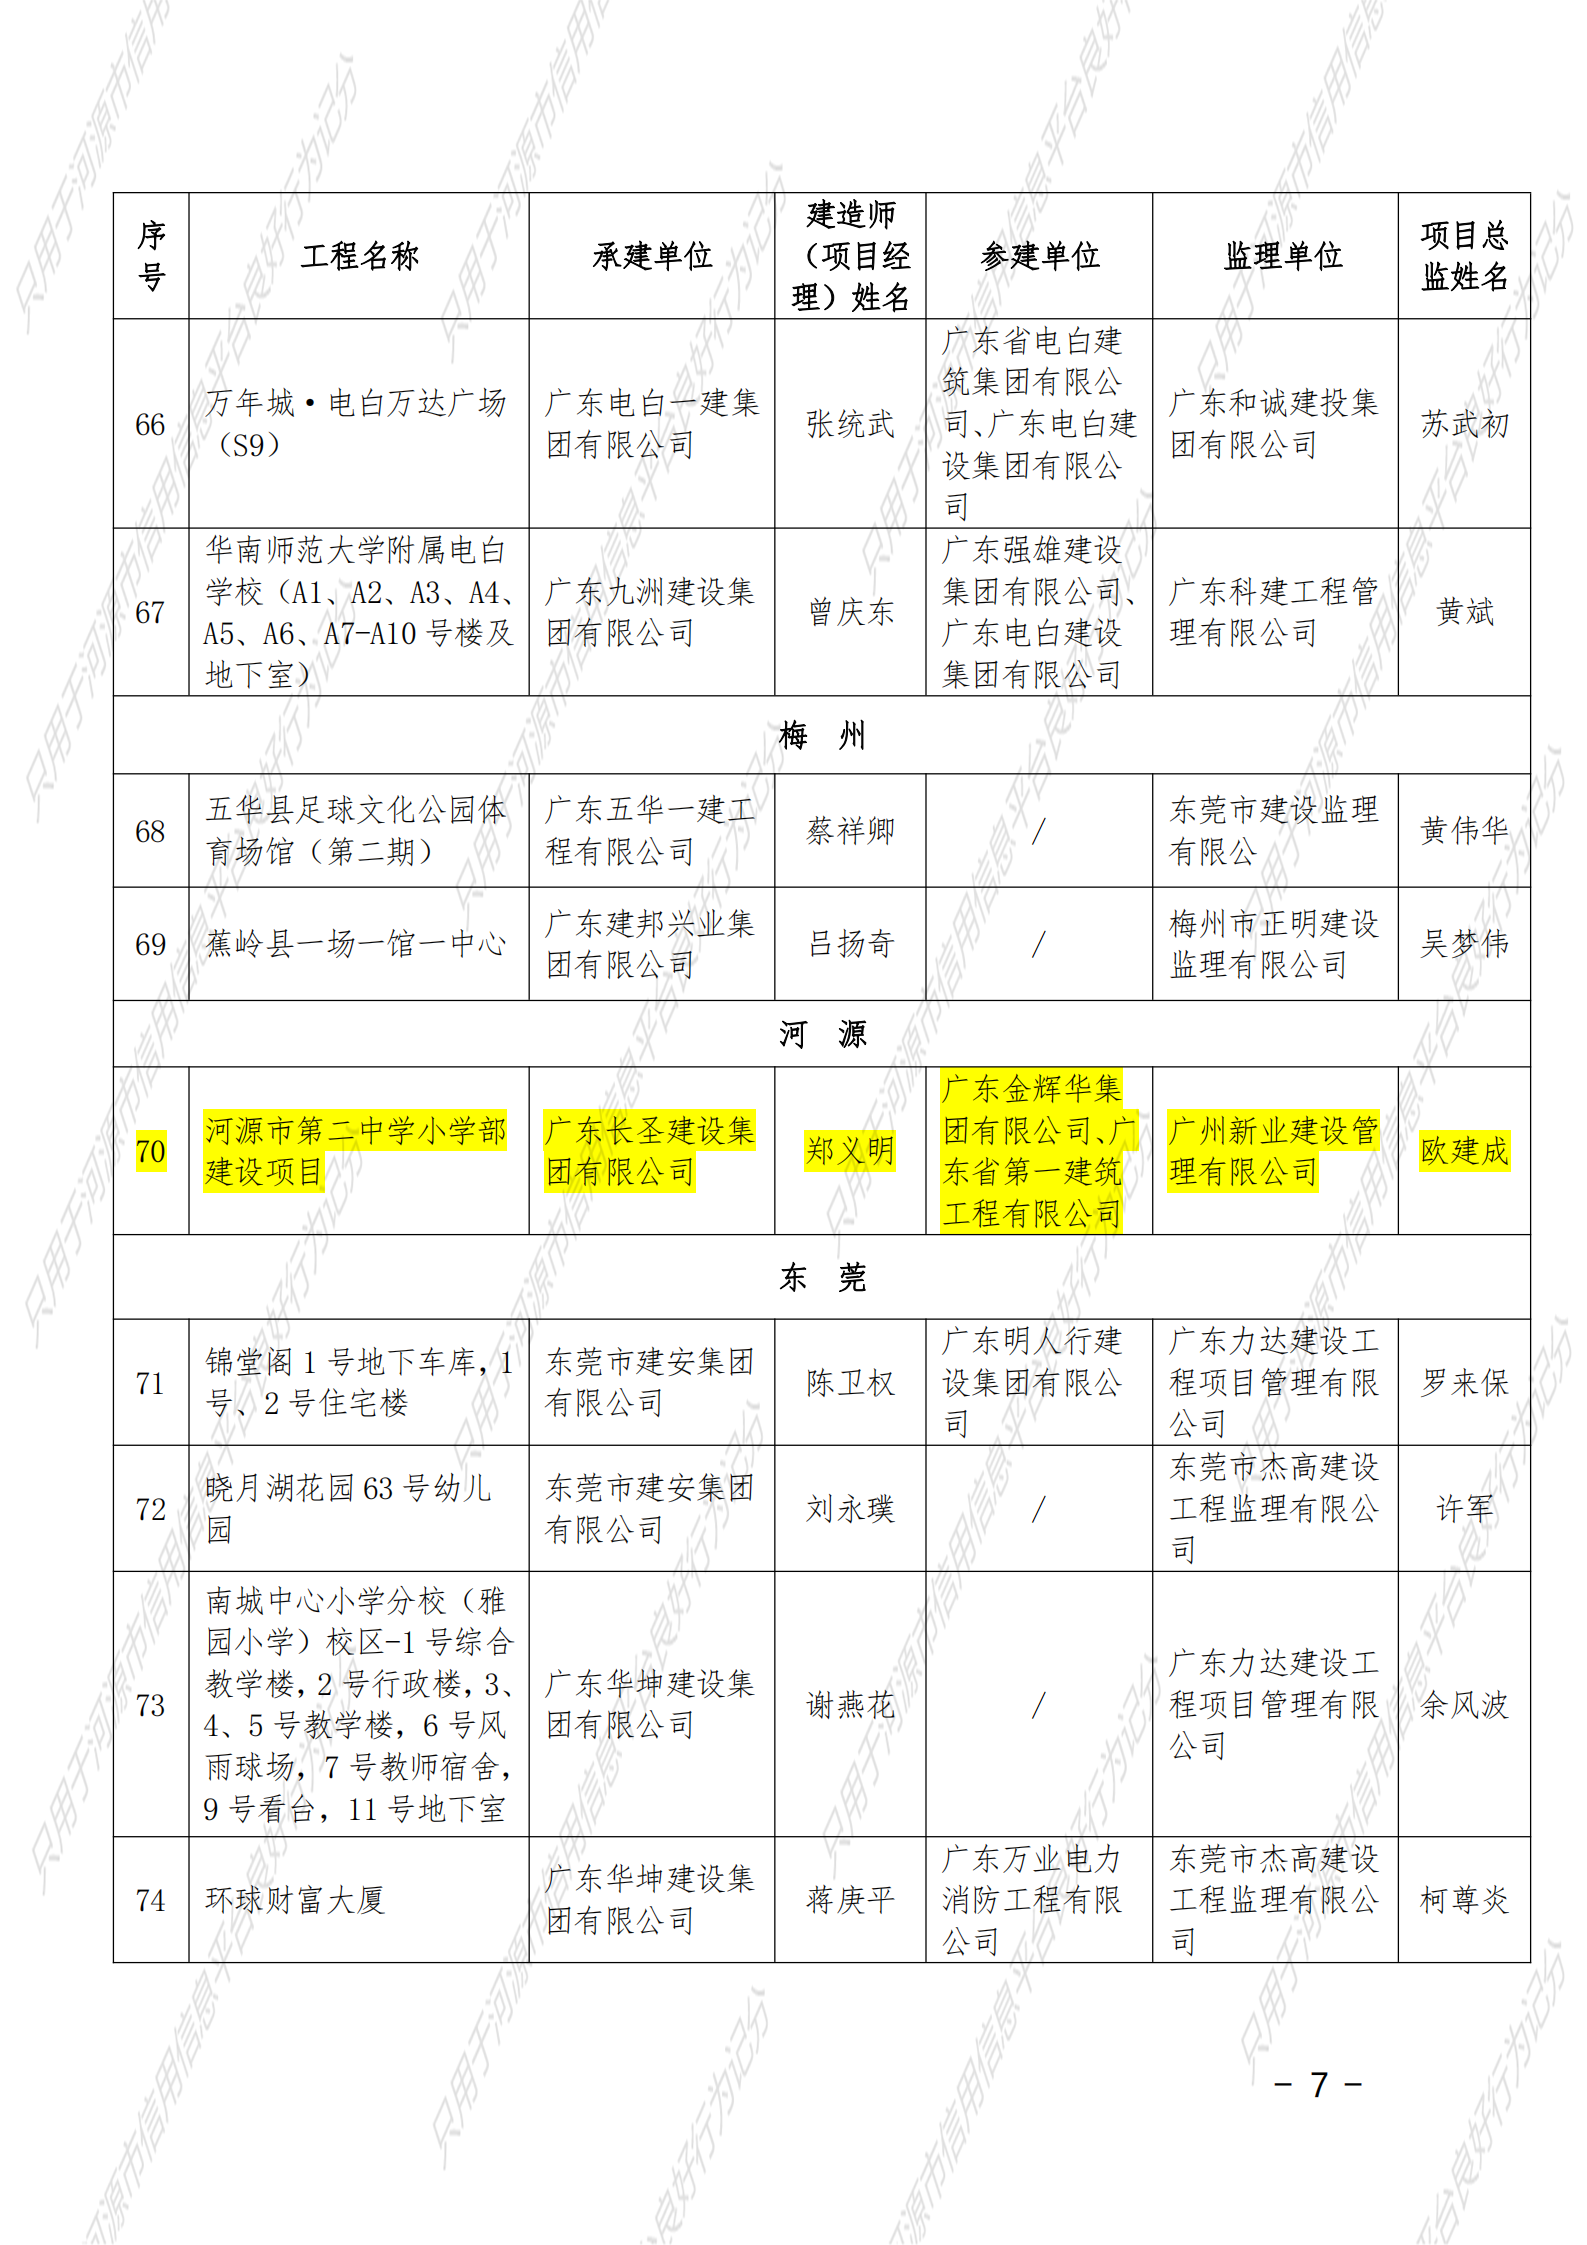 附件 2021年度广东省建设工程优质奖（房屋建筑及专业工程）名单_06